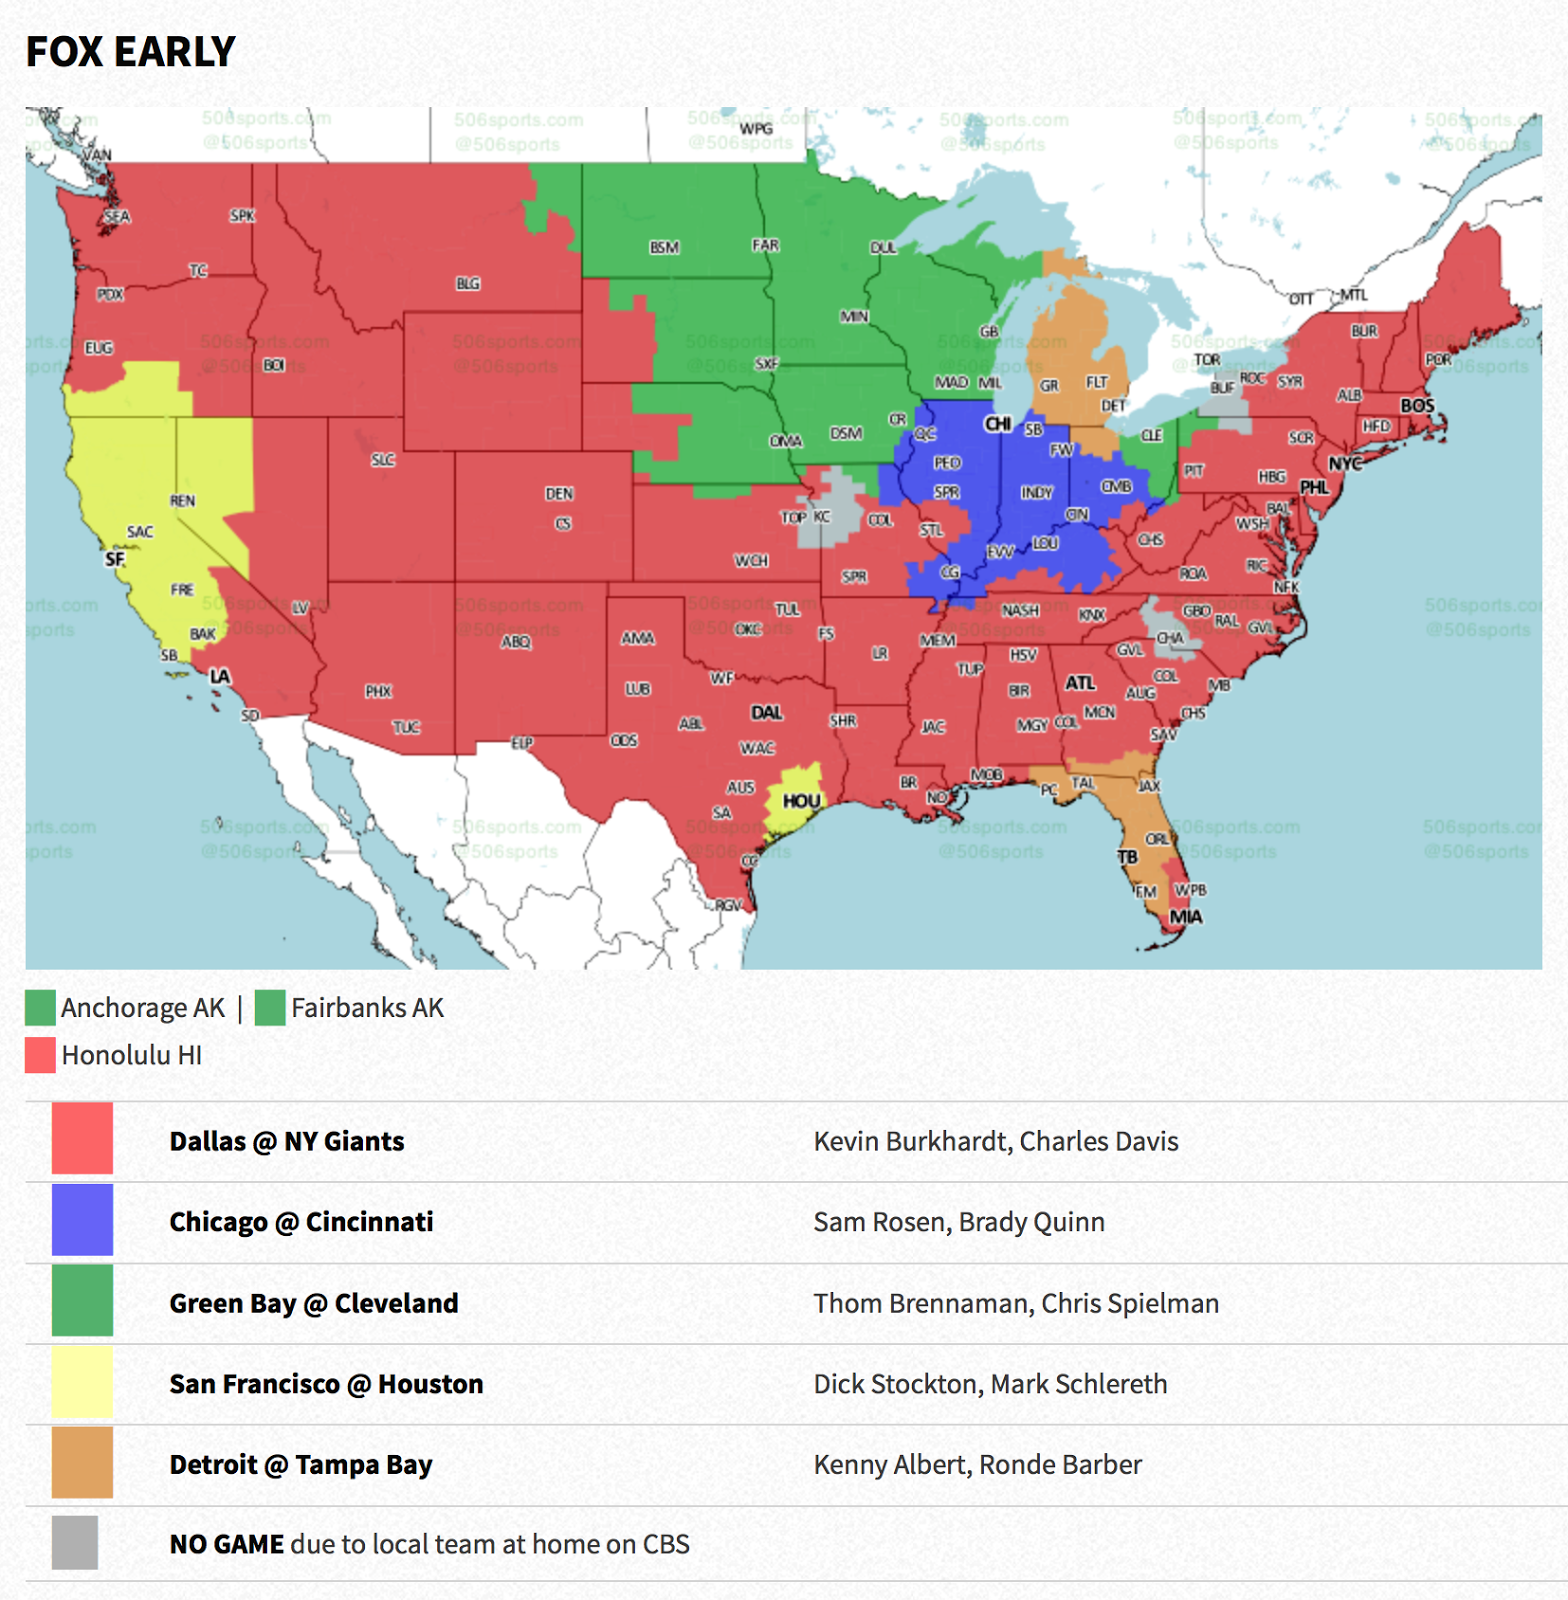 PACKERVILLE, U.S.A.: Week 14 NFL TV Maps